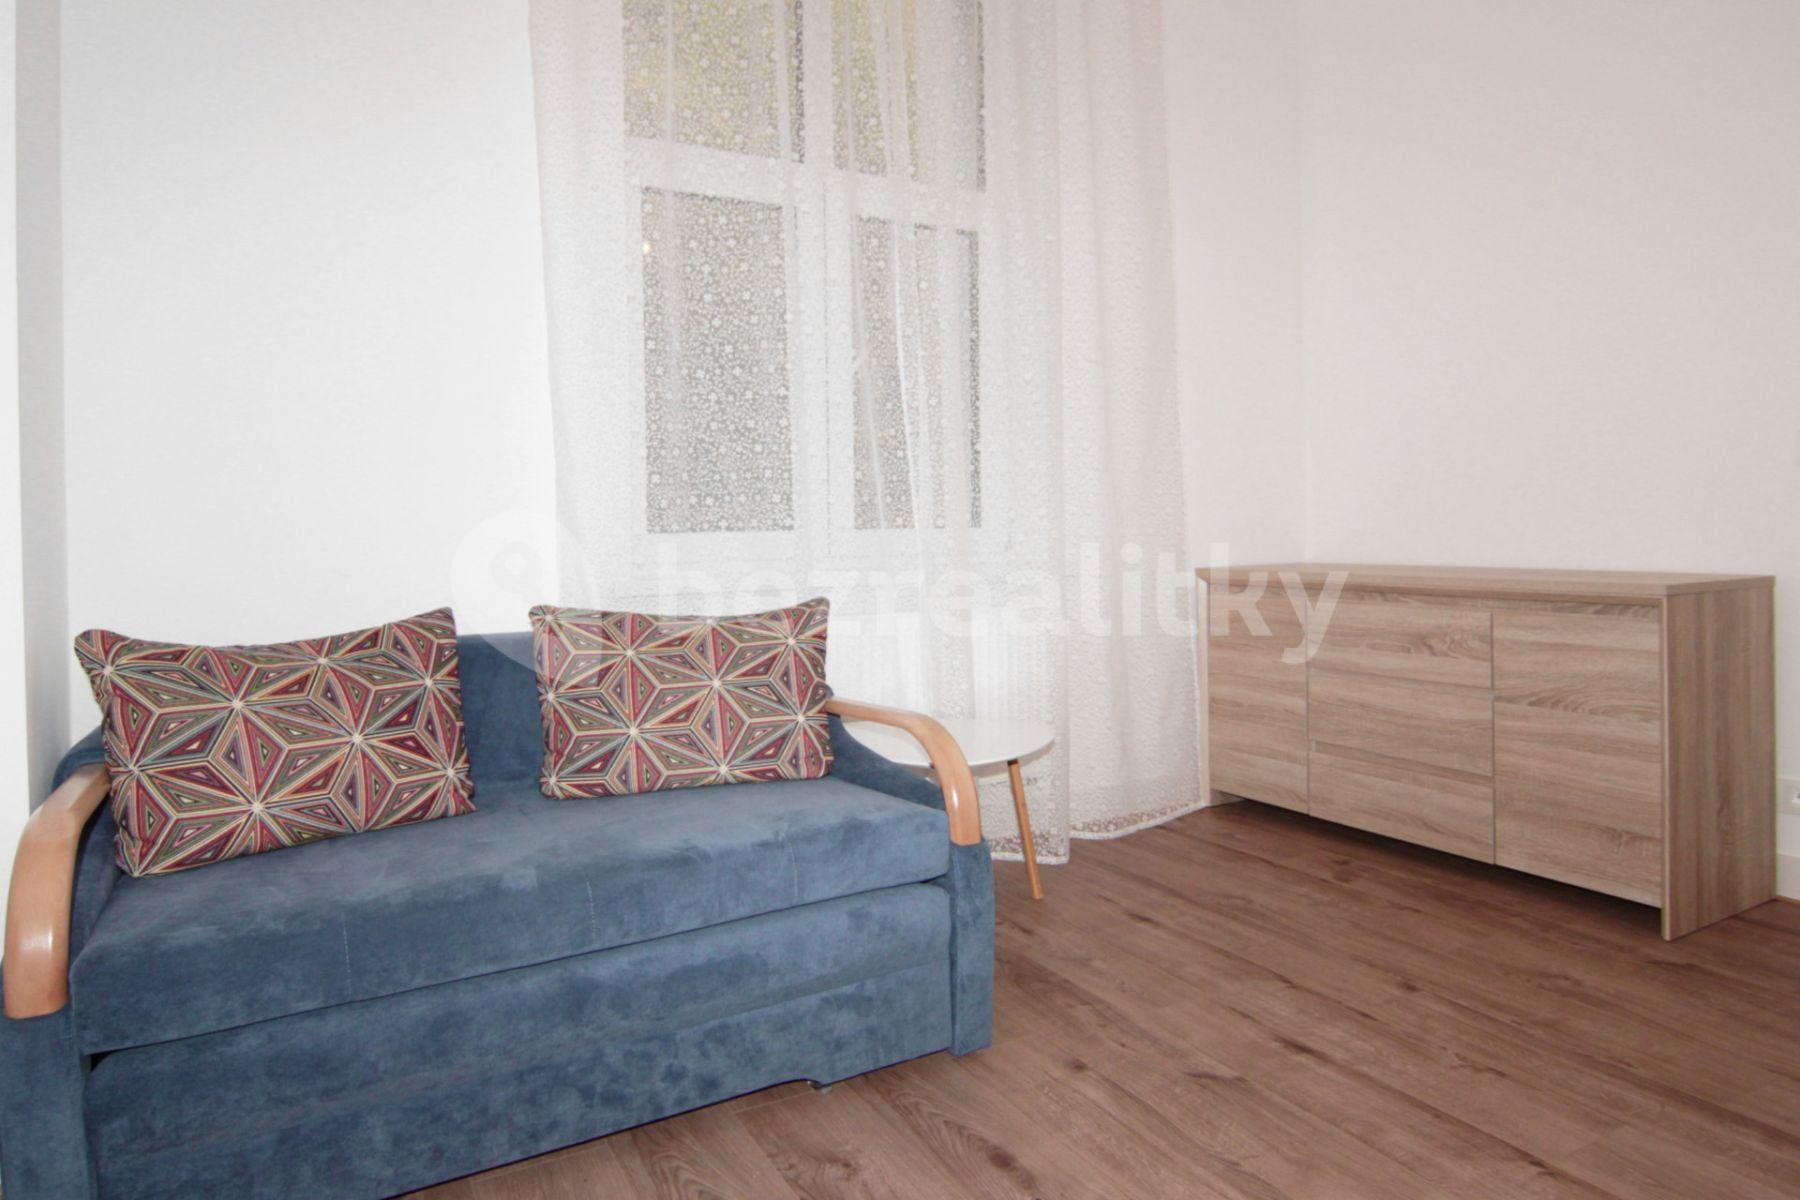 1 bedroom flat to rent, 30 m², Vřídelní, Karlovy Vary, Karlovarský Region